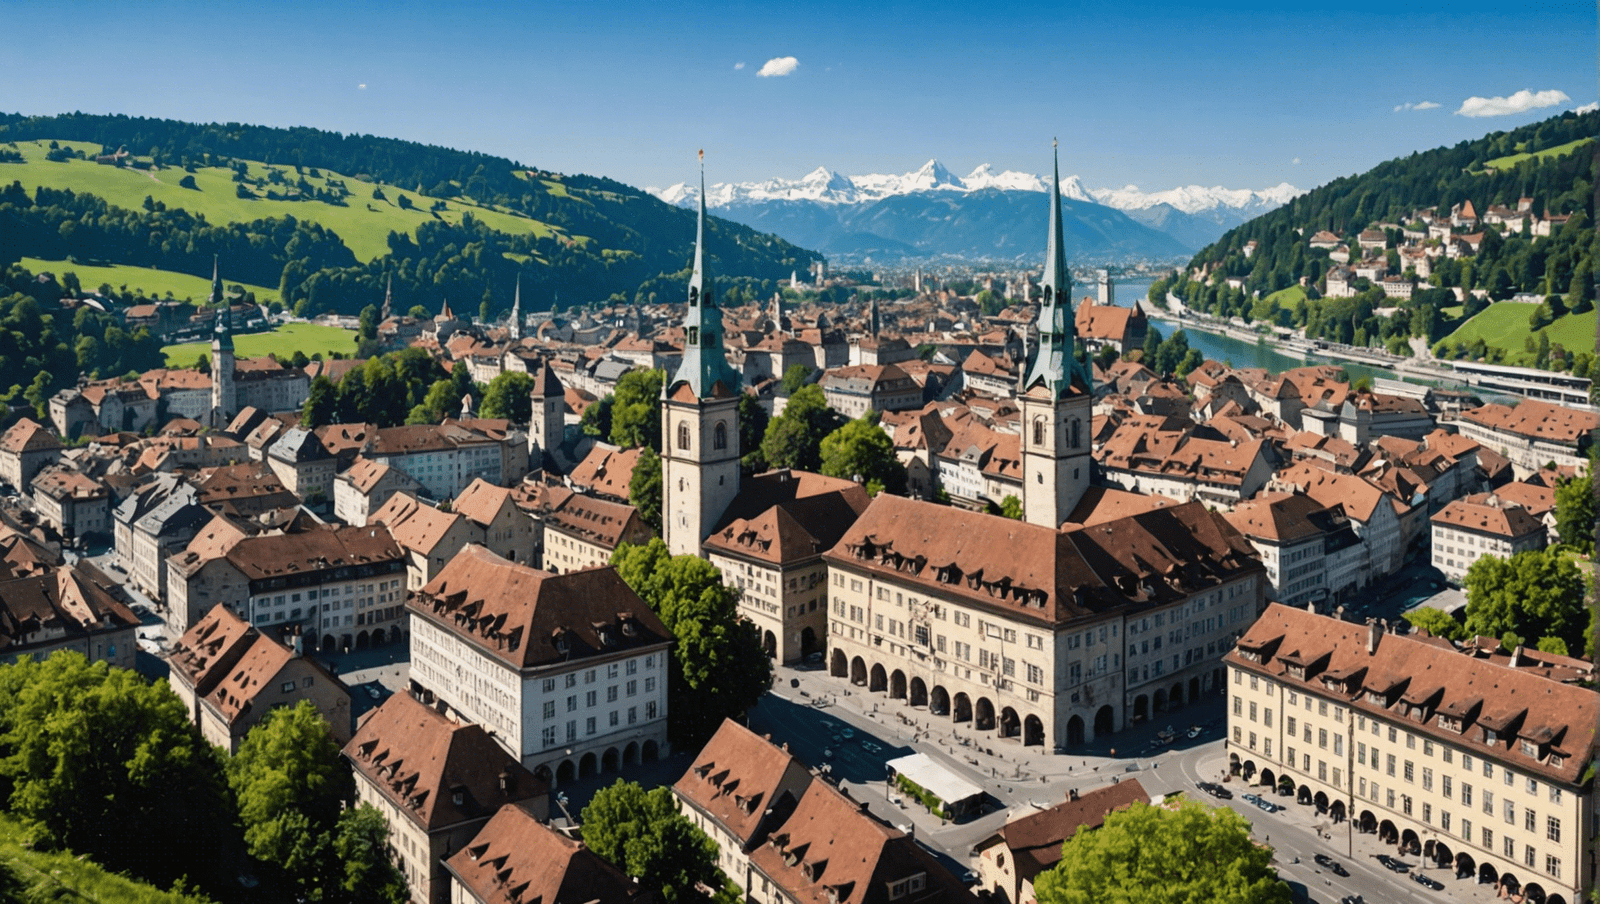 découvrez berne, la capitale de la suisse, avec le guide de voyage complet qui vous emmène à la découverte de ses sites emblématiques, de son histoire fascinante et de sa culture unique.